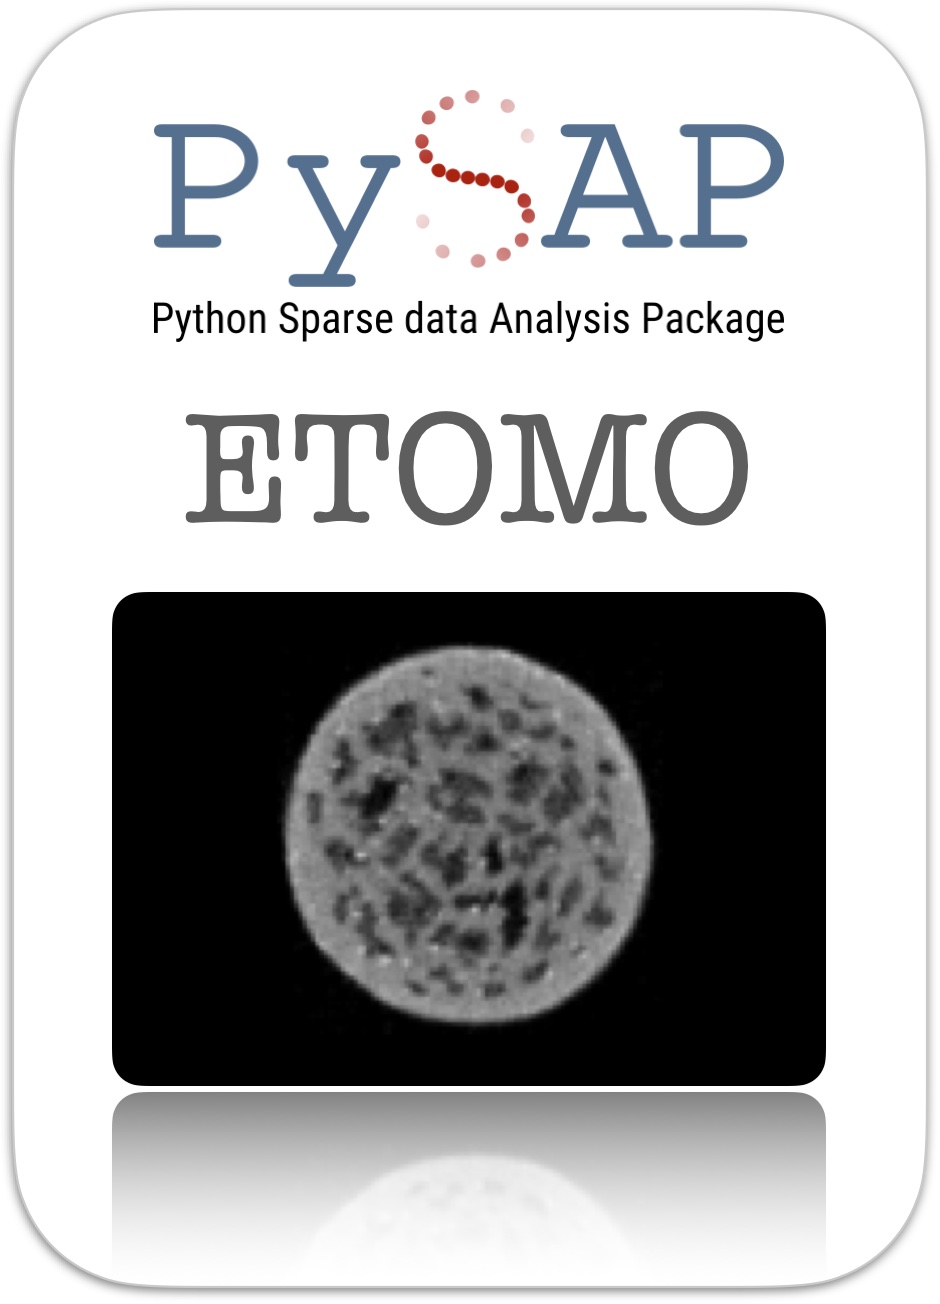 PySAP-ETomo